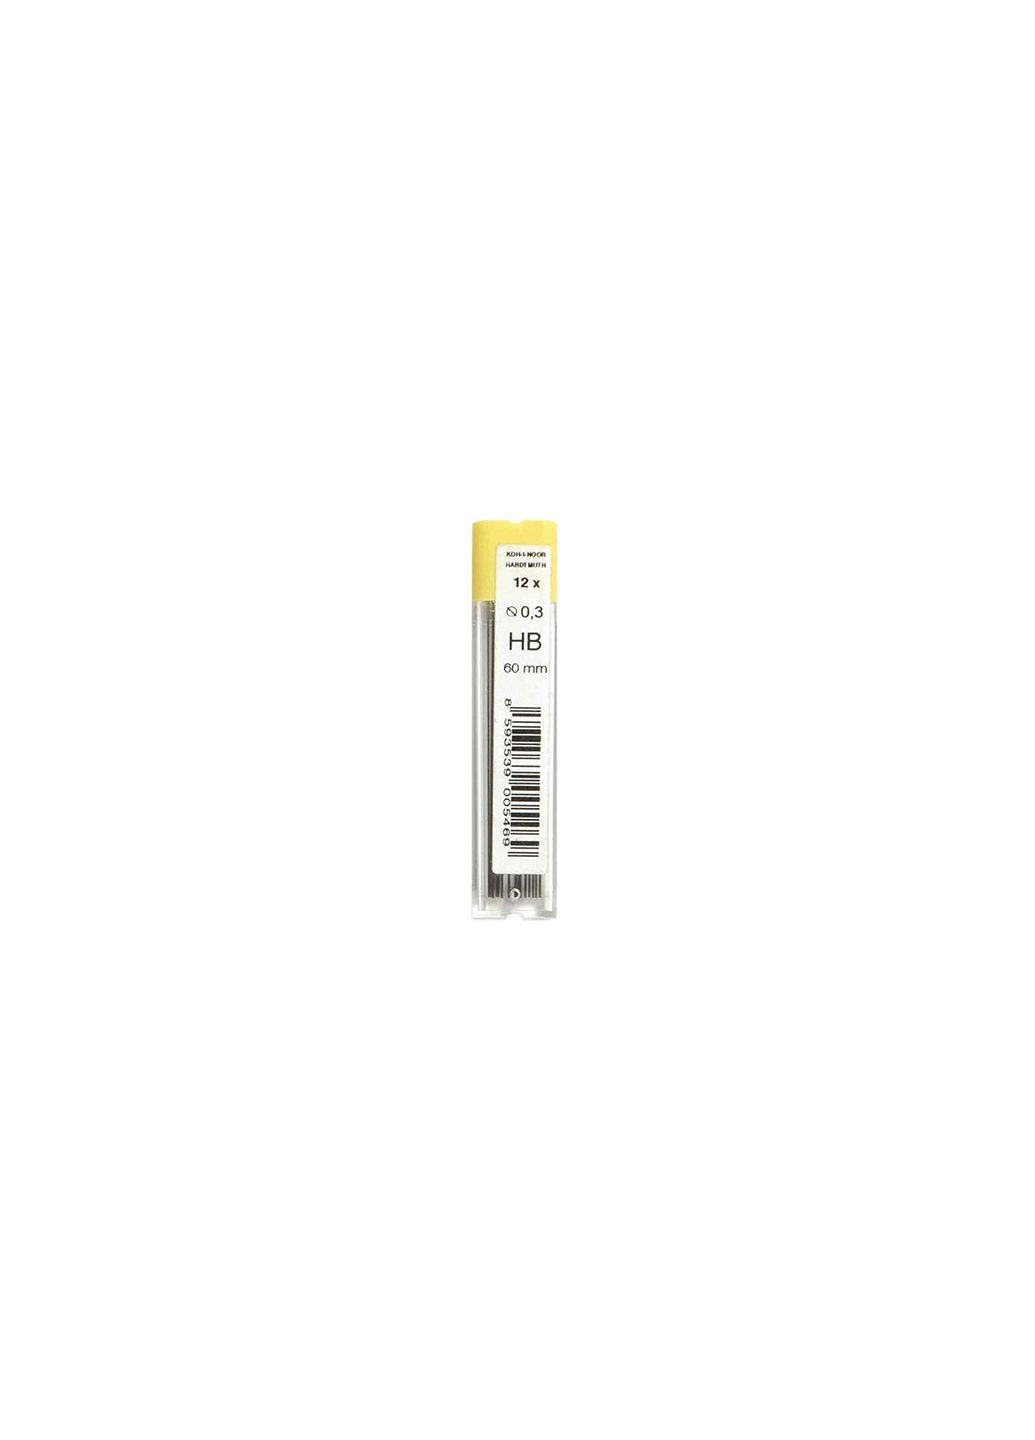 Грифелі для механічного олівця 0,3 мм., HB, Kohi-noor 4132 Koh-I-Noor (280941462)